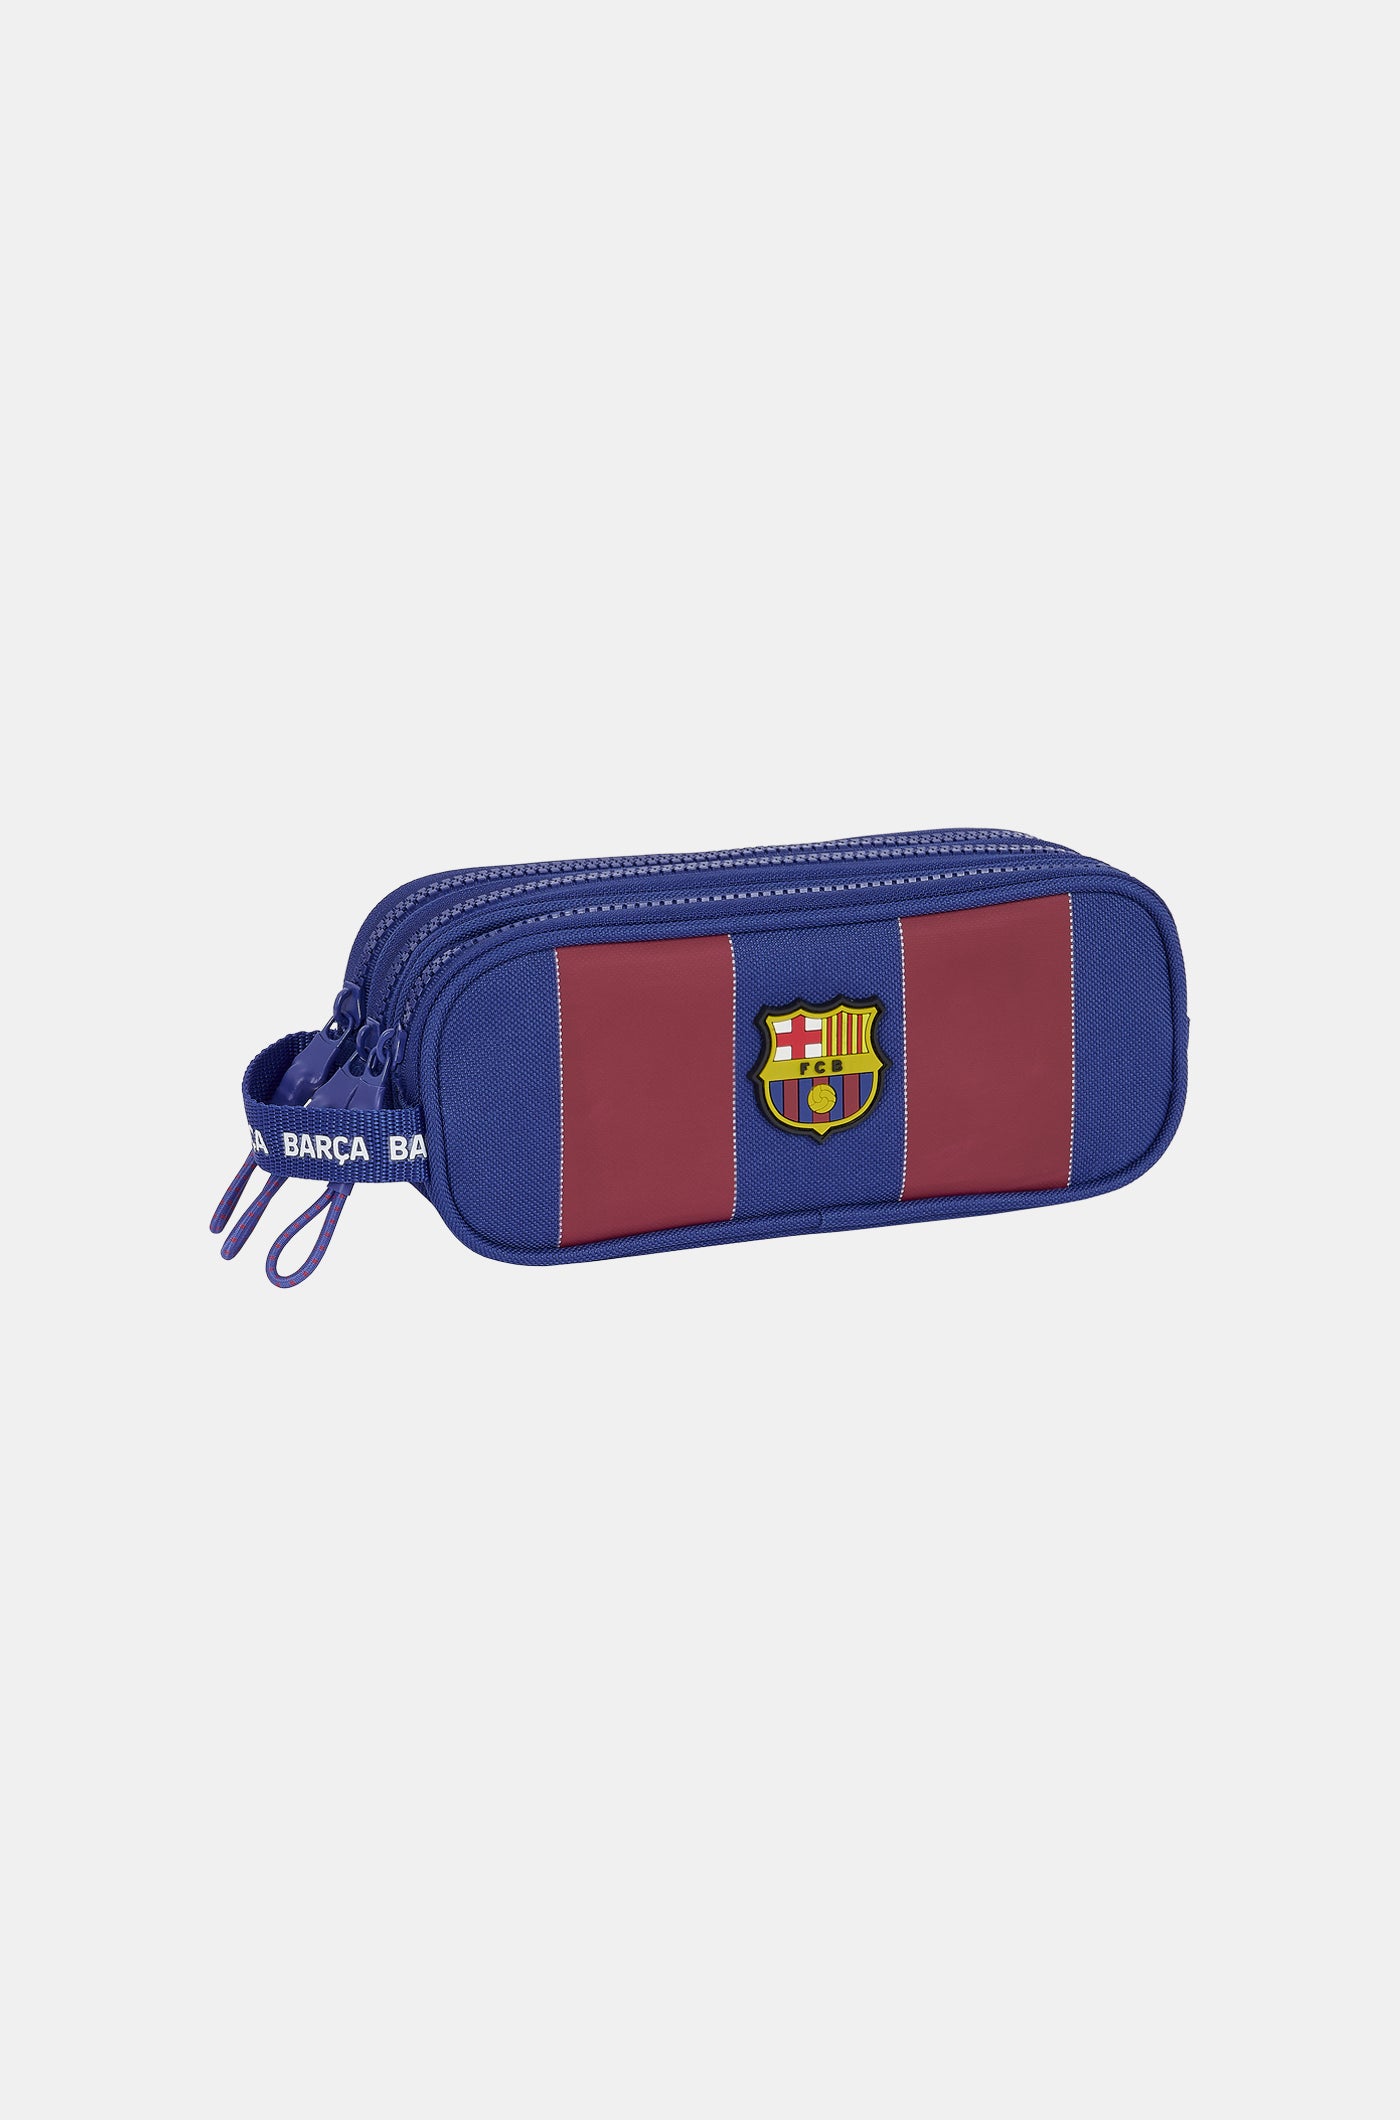 Neceser de Futbol Barcelona personalizado - Neceser infantil personalizado  barcelona- Neceser escolar de futbol - Neceser Portatodo deporte o colegio  (Negro) : : Productos Handmade